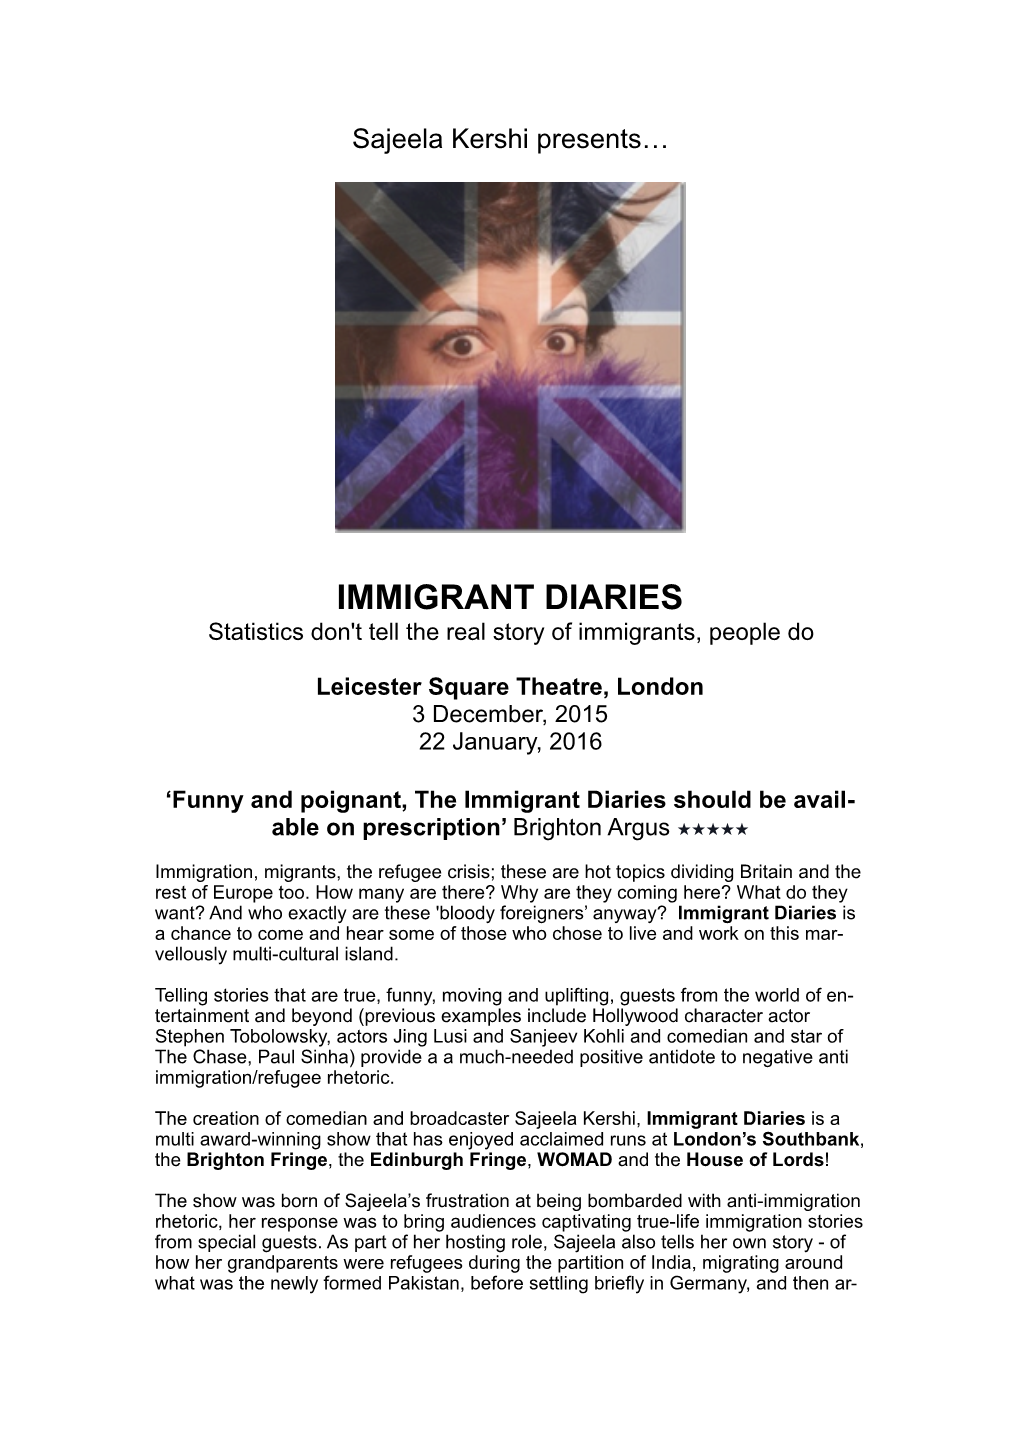 LST 2015 Immigrant Diaries PR 2